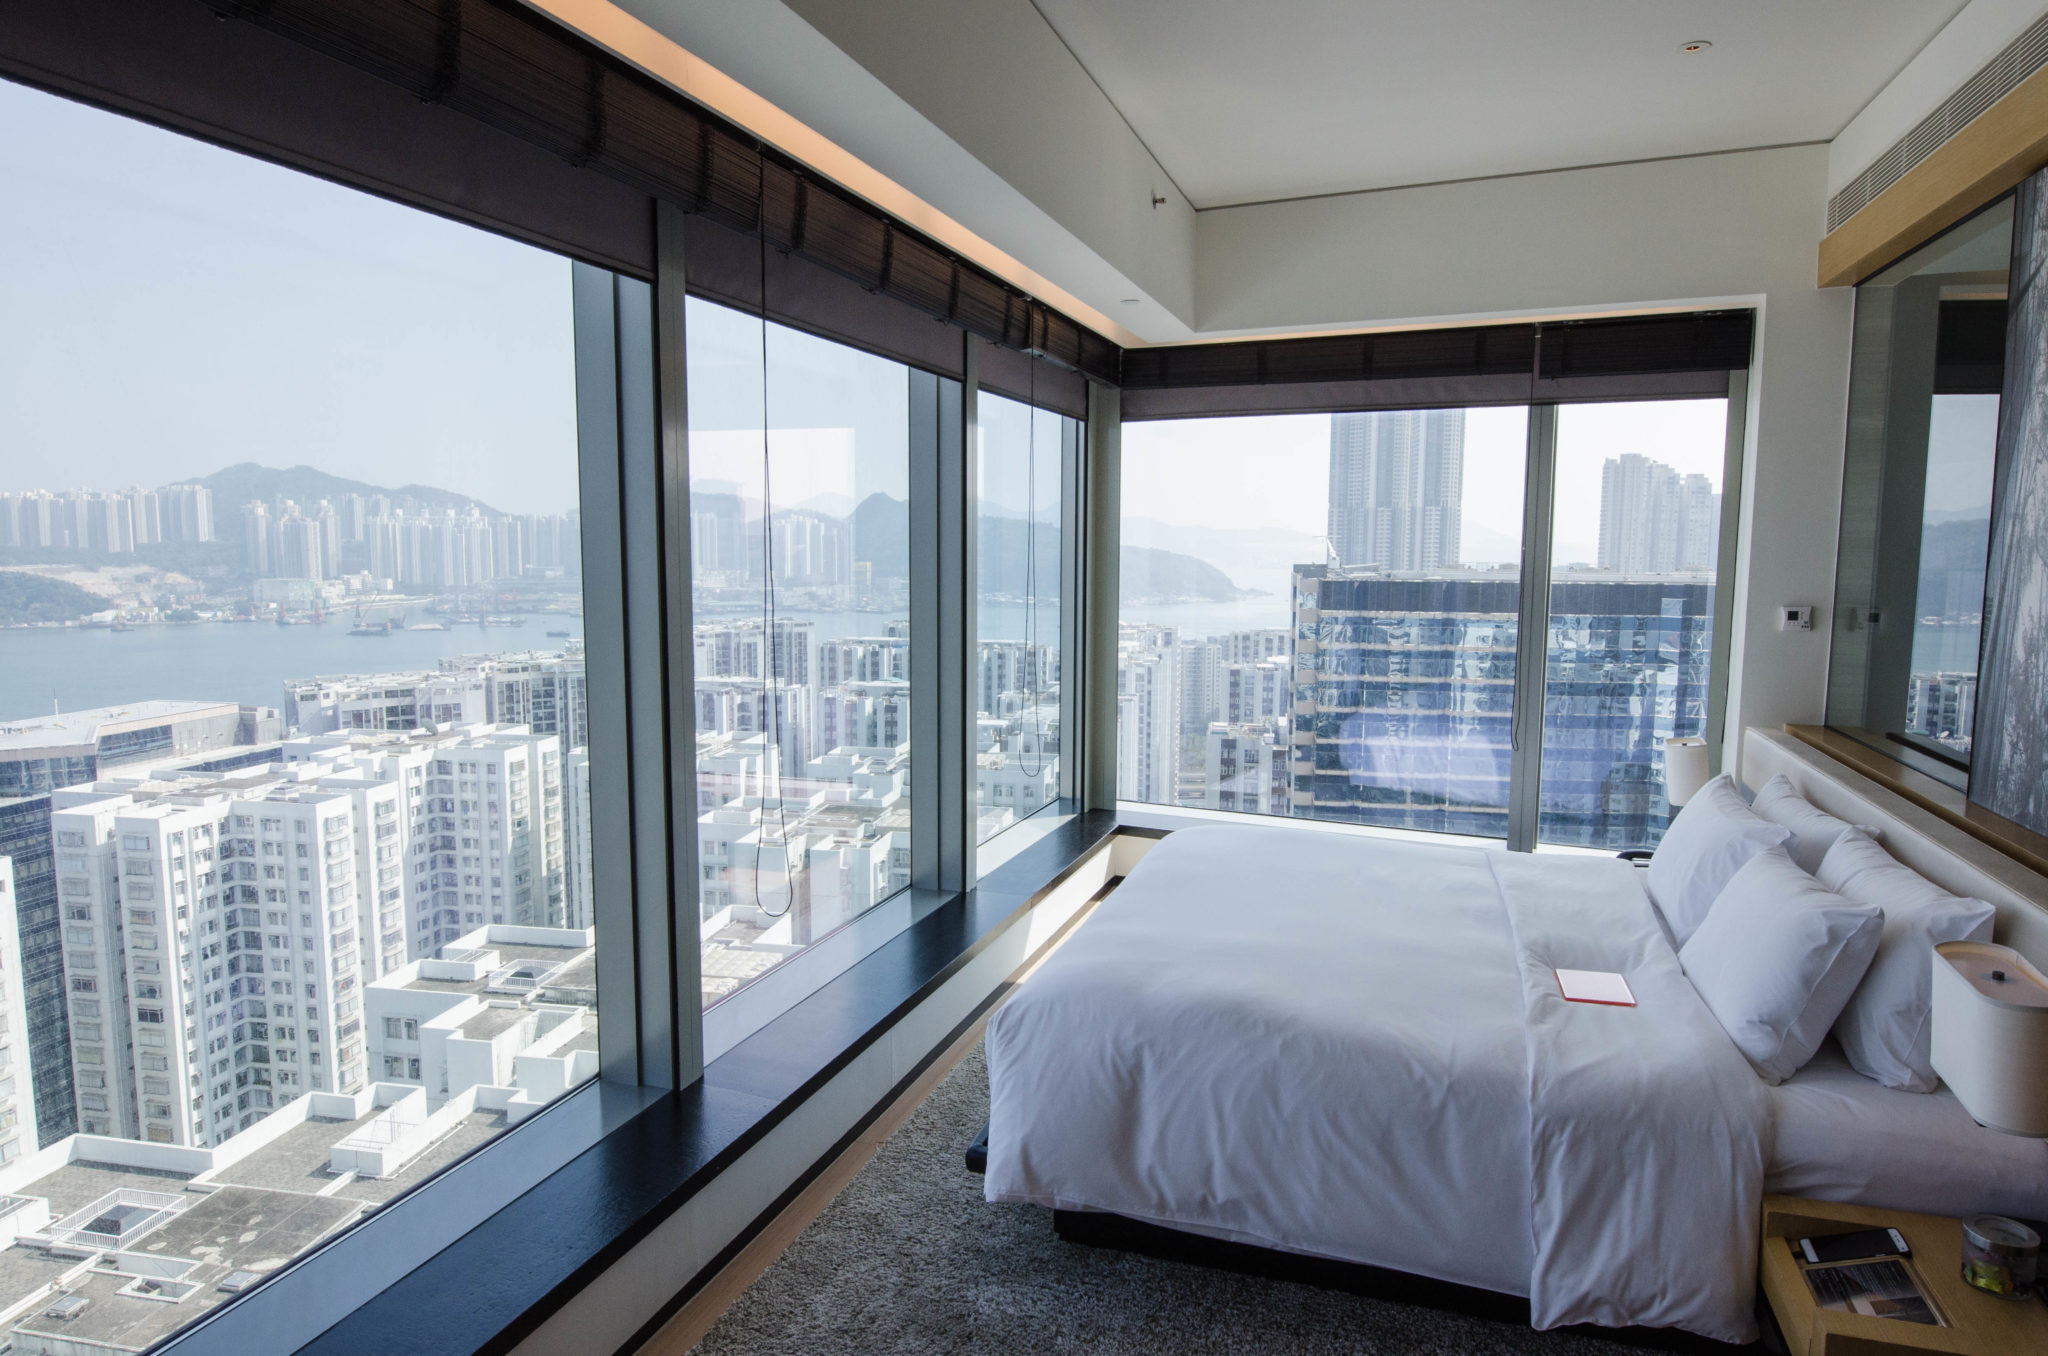 Hotel EAST Hong Kong: Ein modernes Hotel mit schickem Design